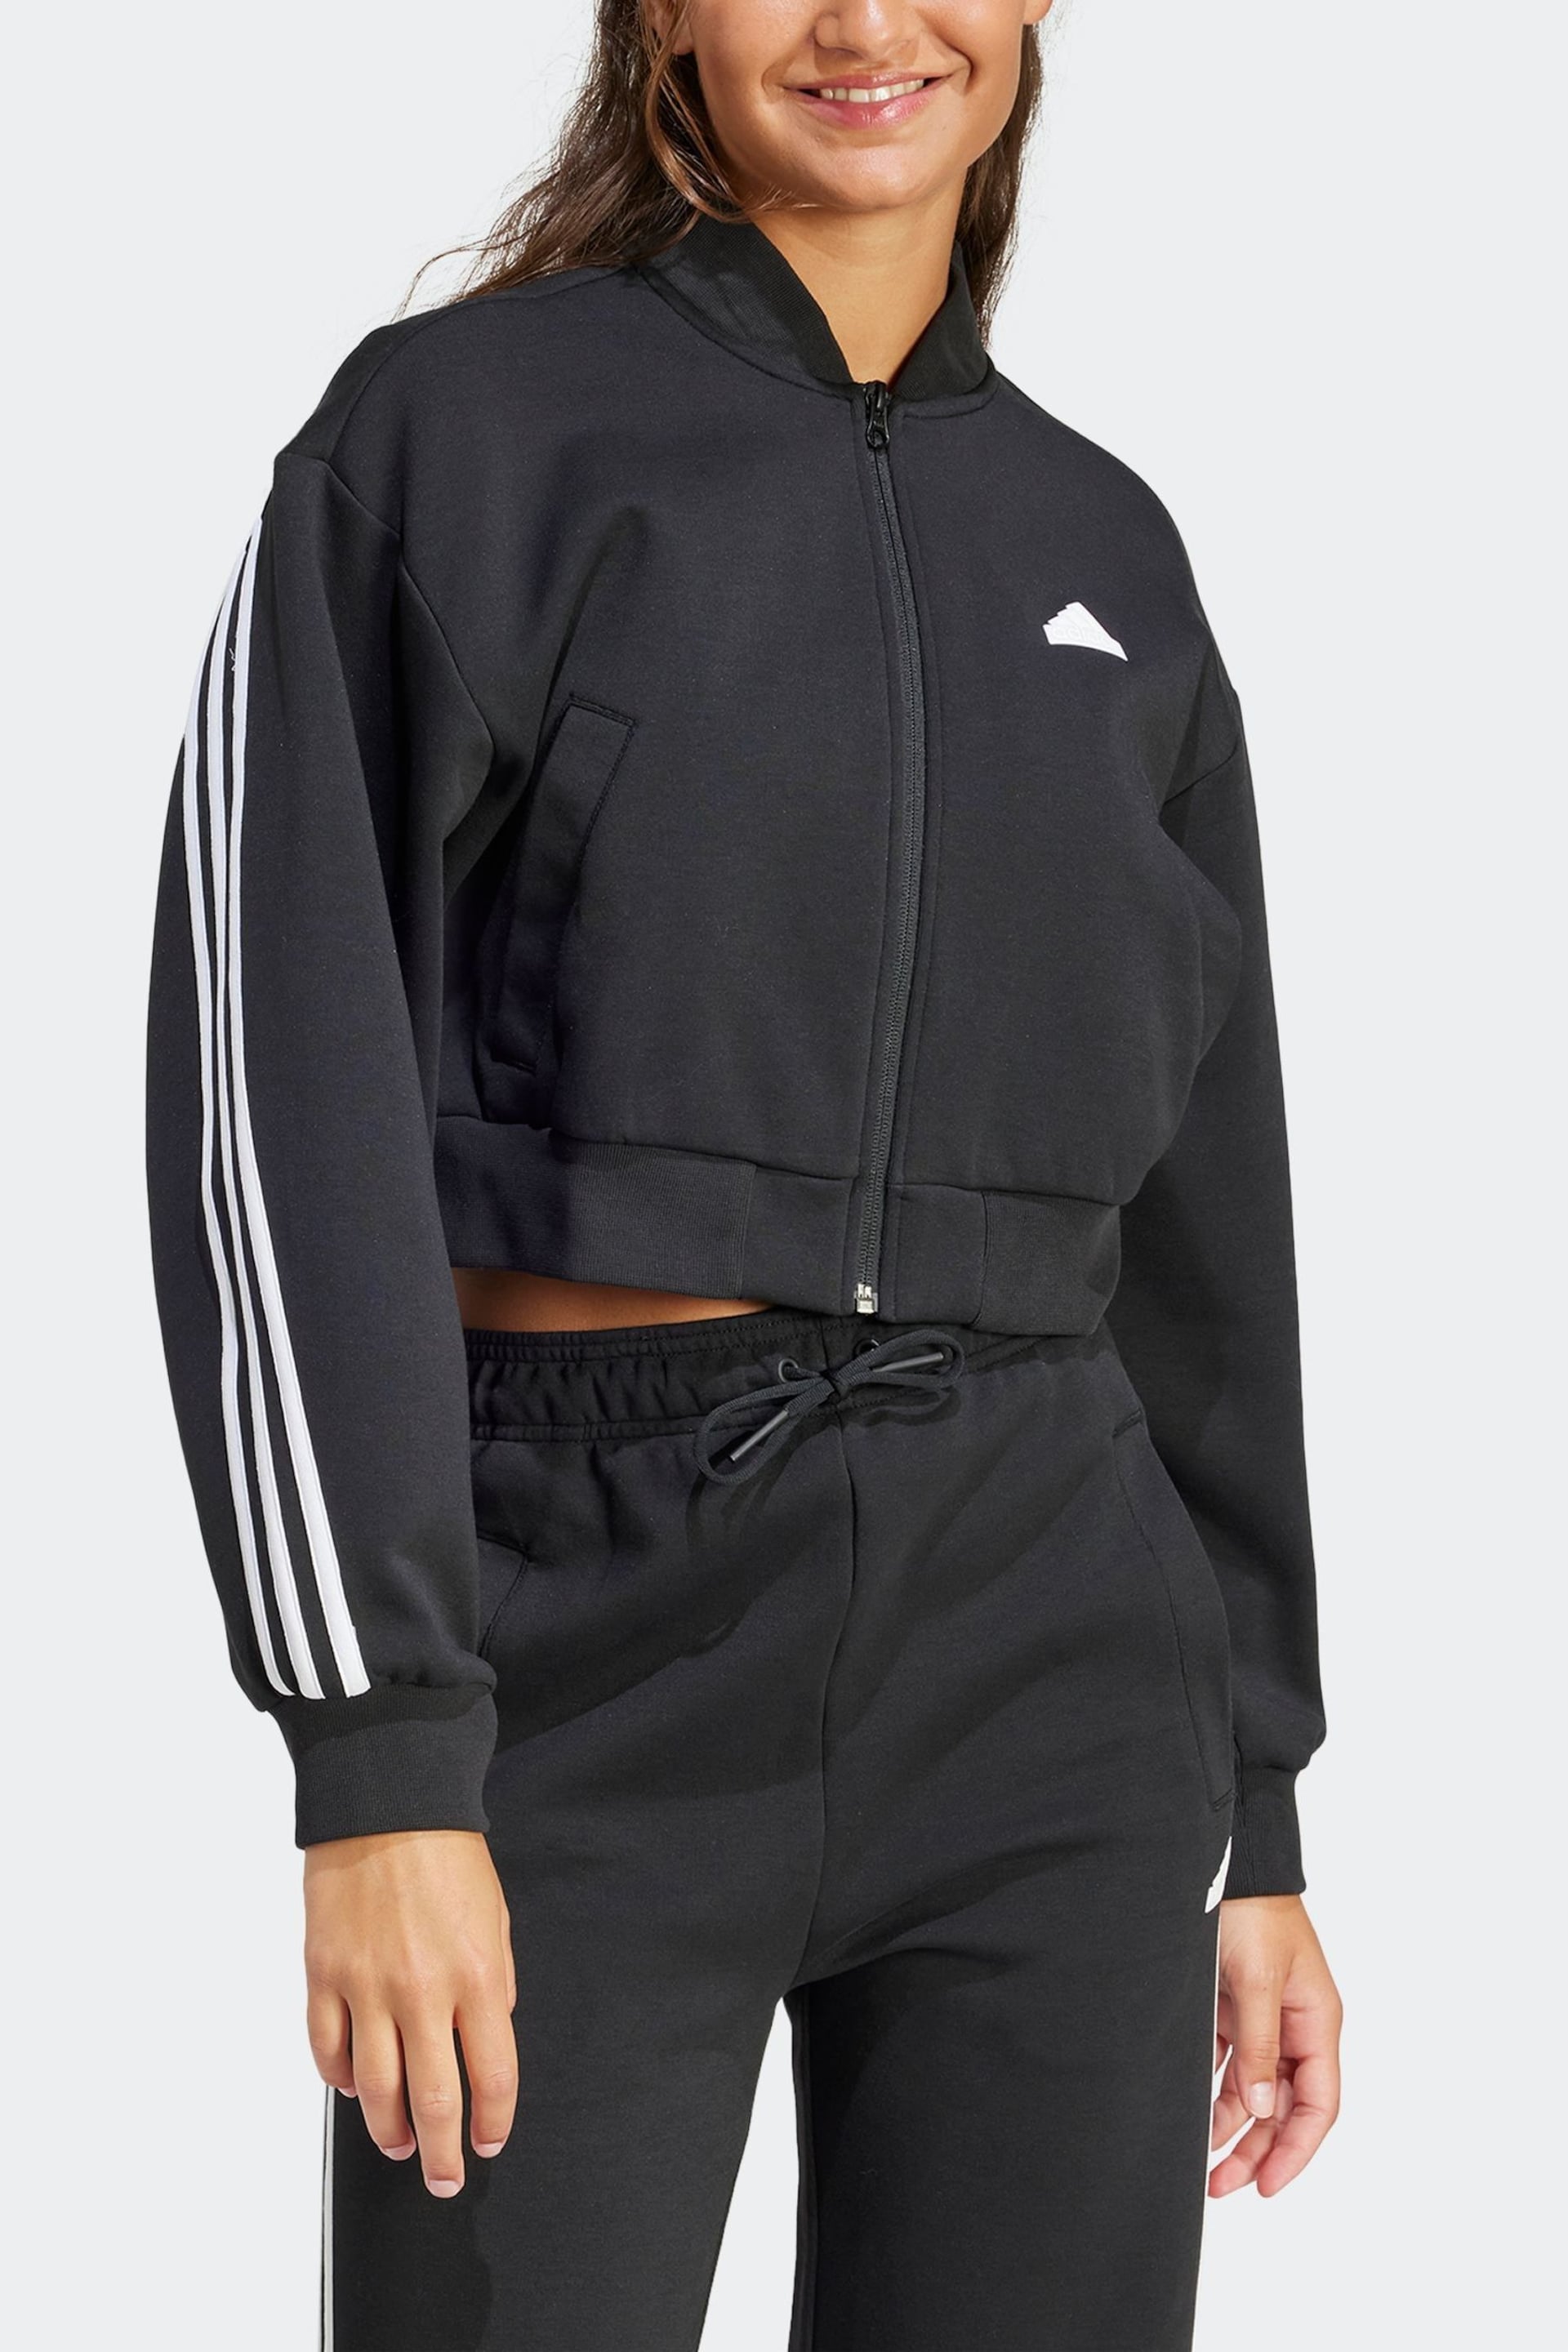 adidas Black Sportswear Future Icons 3-Stripes Bomber Jacket - Image 1 of 5